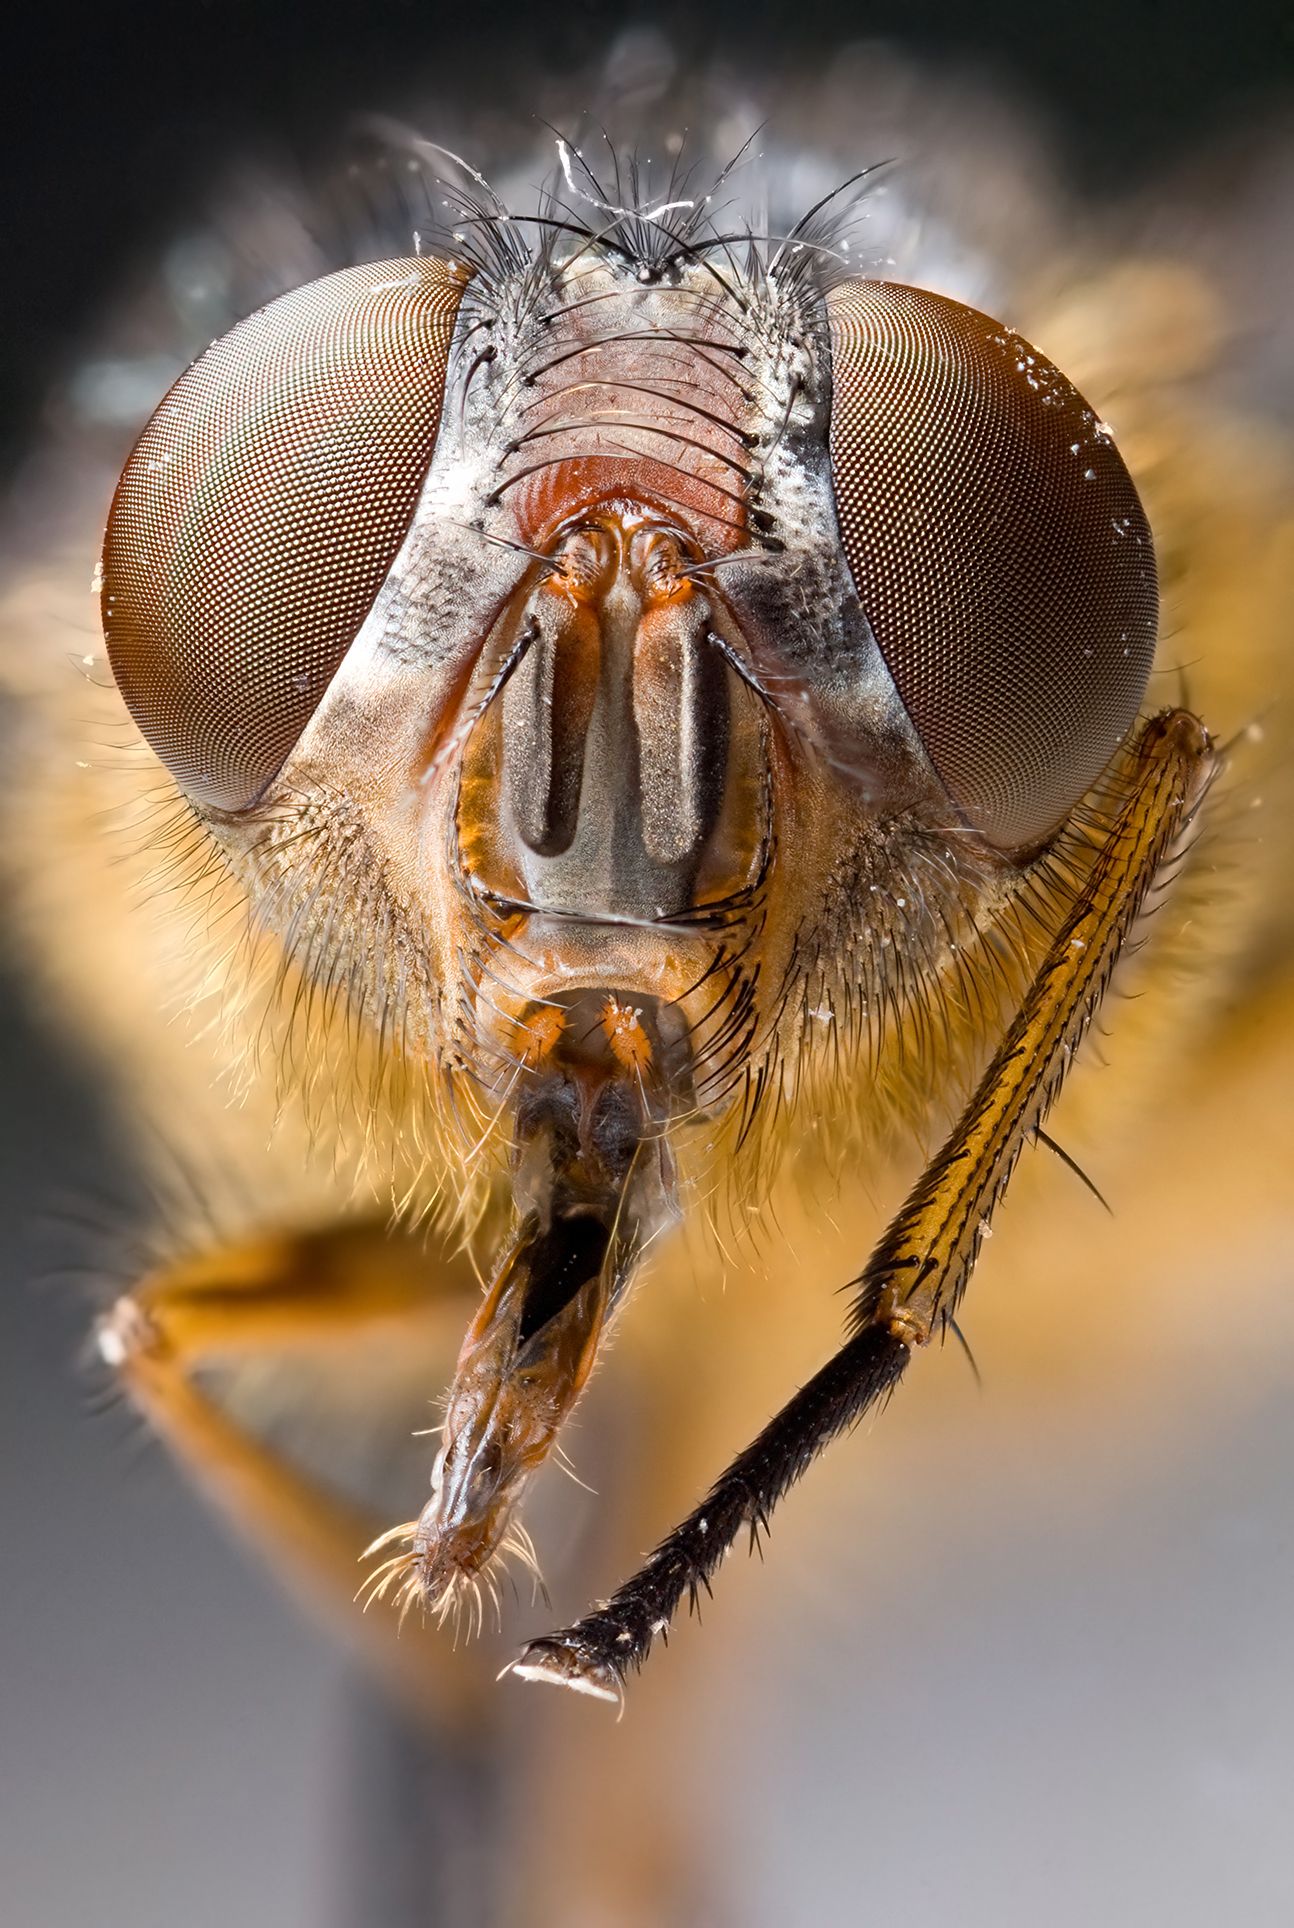 Hmyz do 100 let kompletně zmizí z povrchu zemského, tvrdí vědci